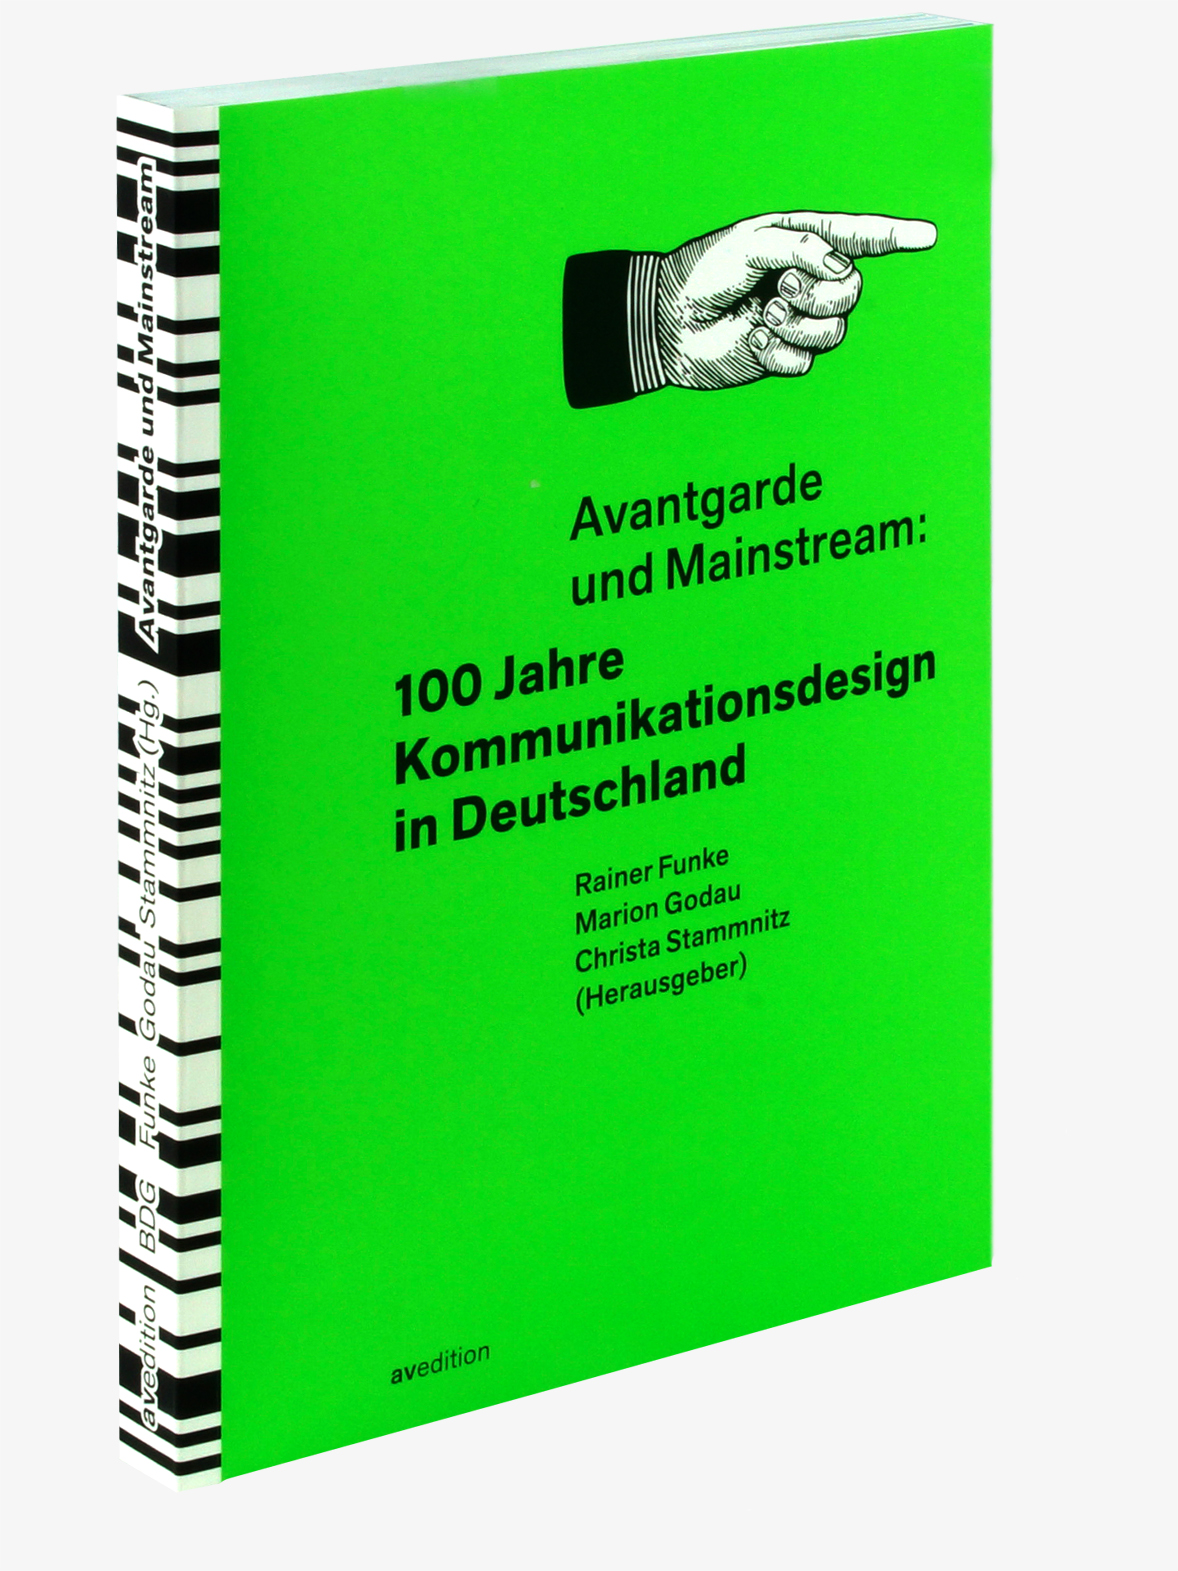 Avantgarde und Mainstream: 100 Jahre Kommunikationsdesign in Deutschland